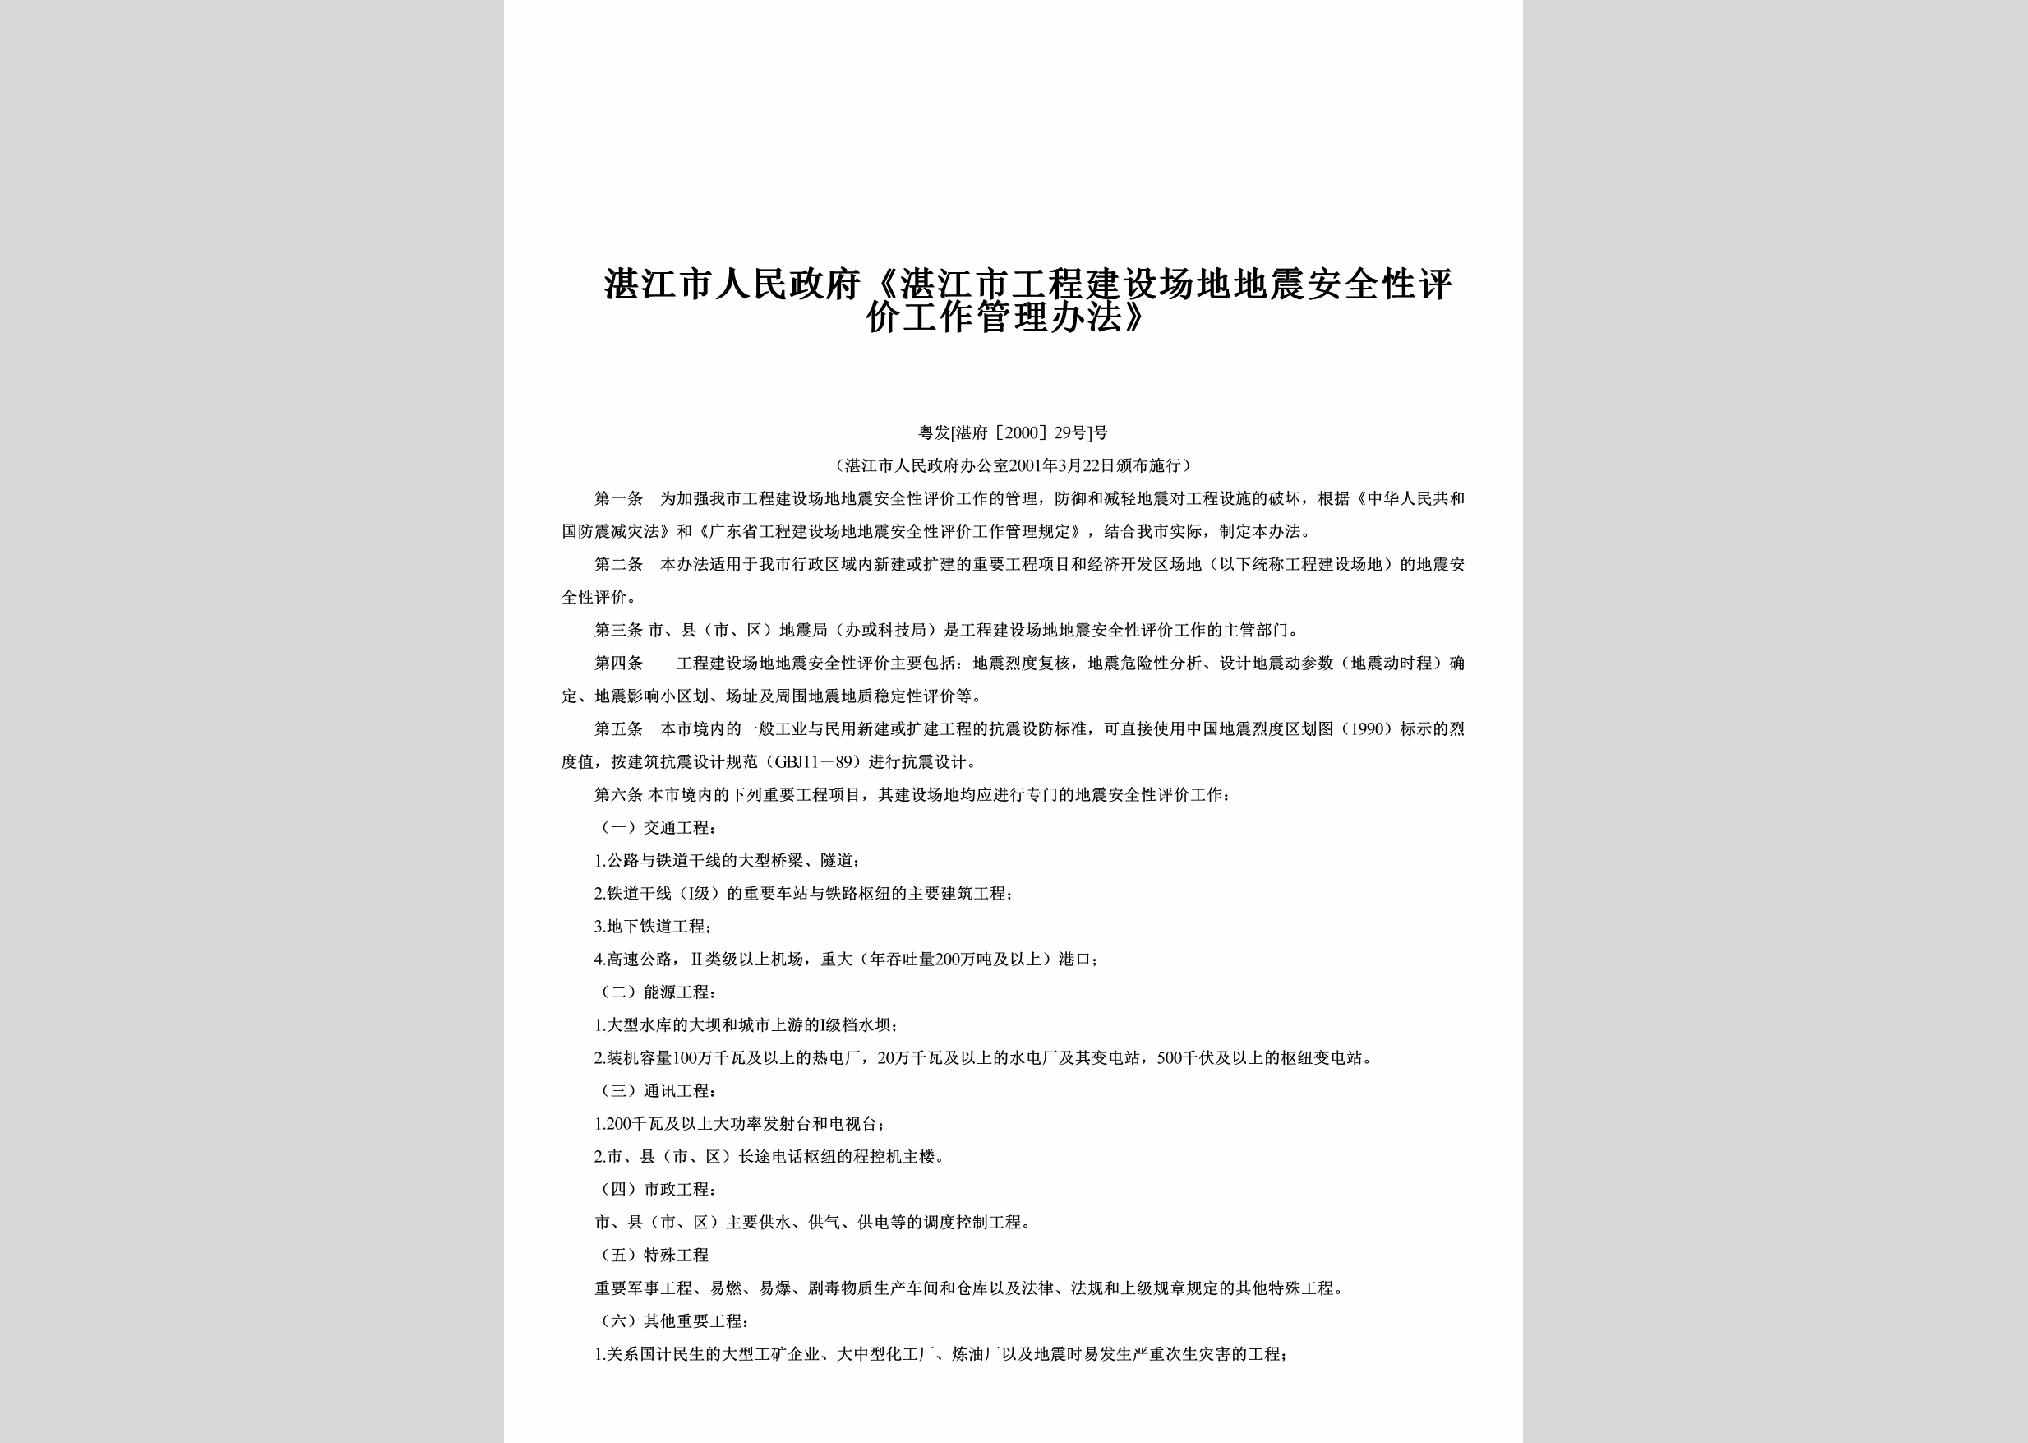 粤发[湛府[2000]29号：《湛江市工程建设场地地震安全性评价工作管理办法》